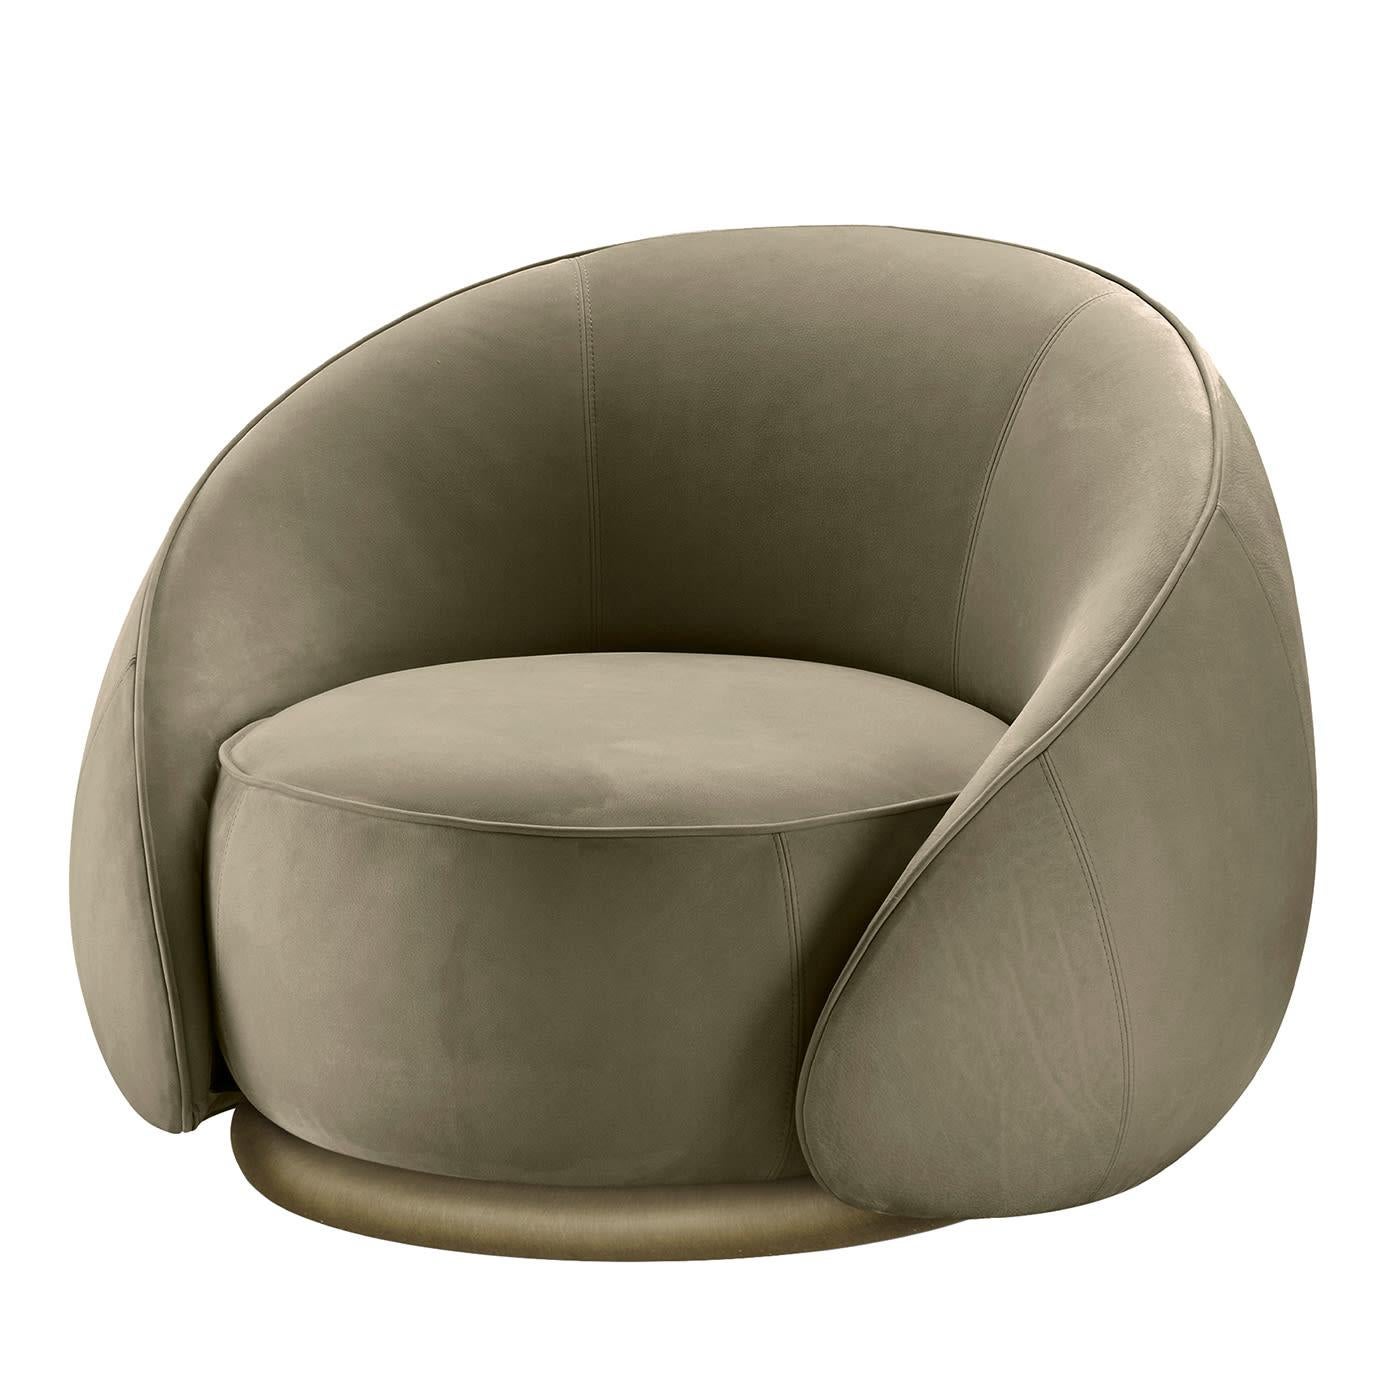 Benannt nach dem italienischen Wort für Umarmungen, ist dieser bemerkenswerte Sessel eine Synthese aus tadellosem Komfort und fesselnder Ästhetik. Großzügig gepolsterte und mit grünem Leder überzogene Volumina garantieren ein unvergessliches